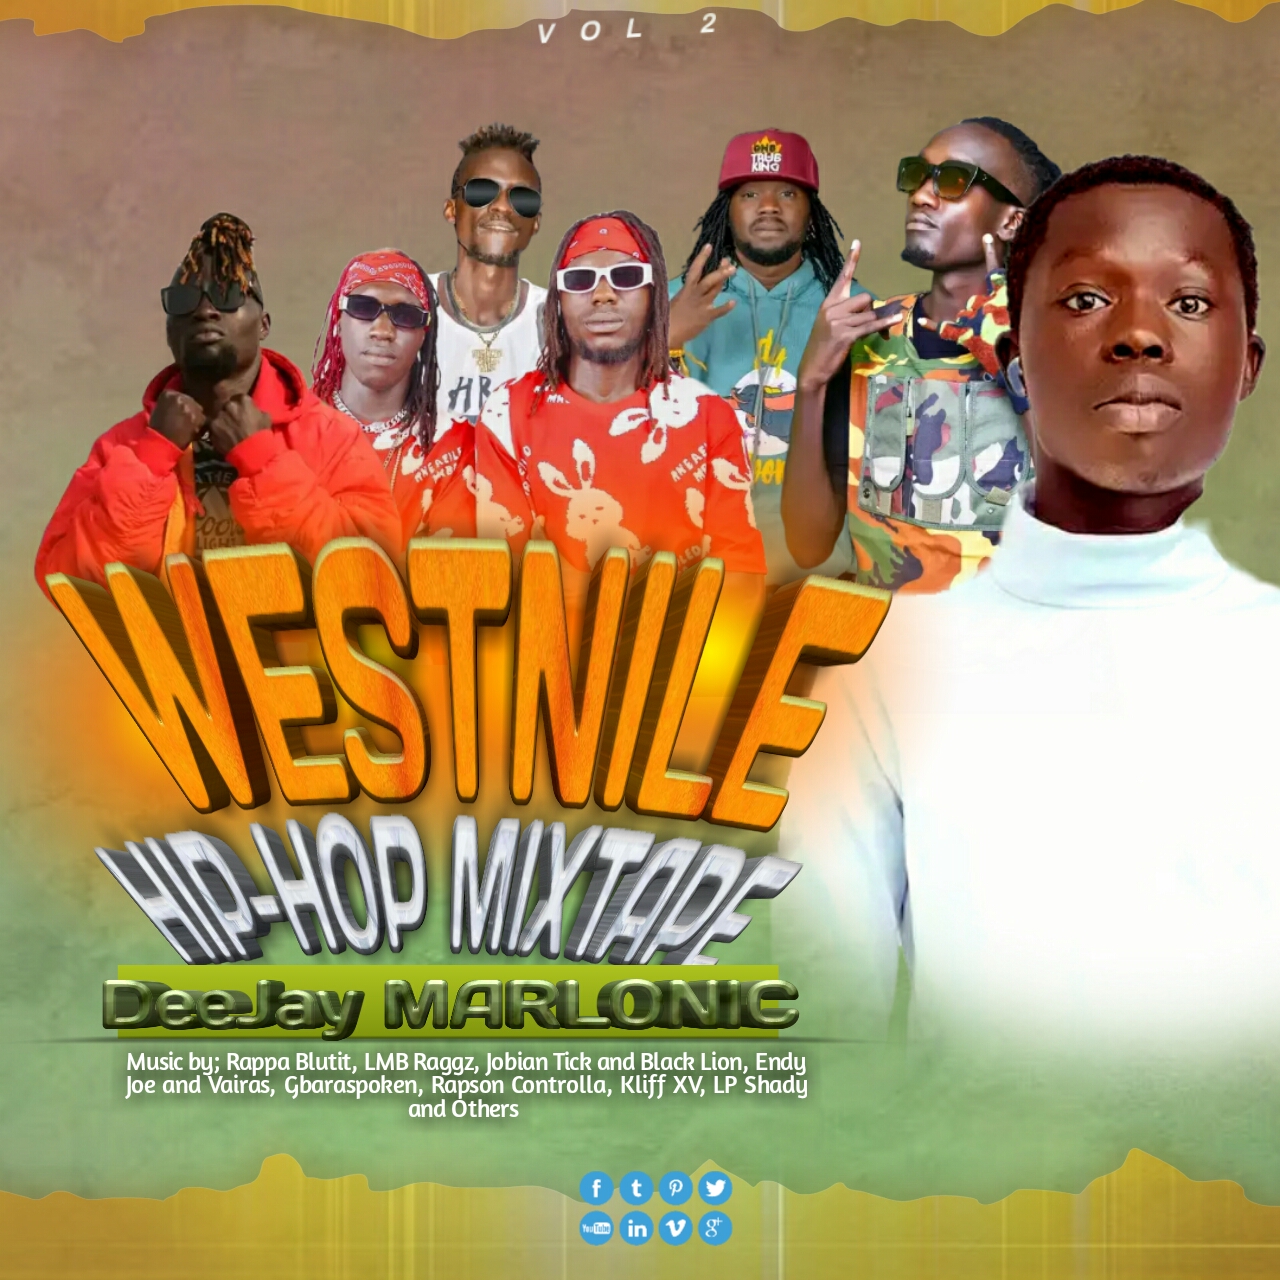 West Nile Hip-hop mixtape vol 2